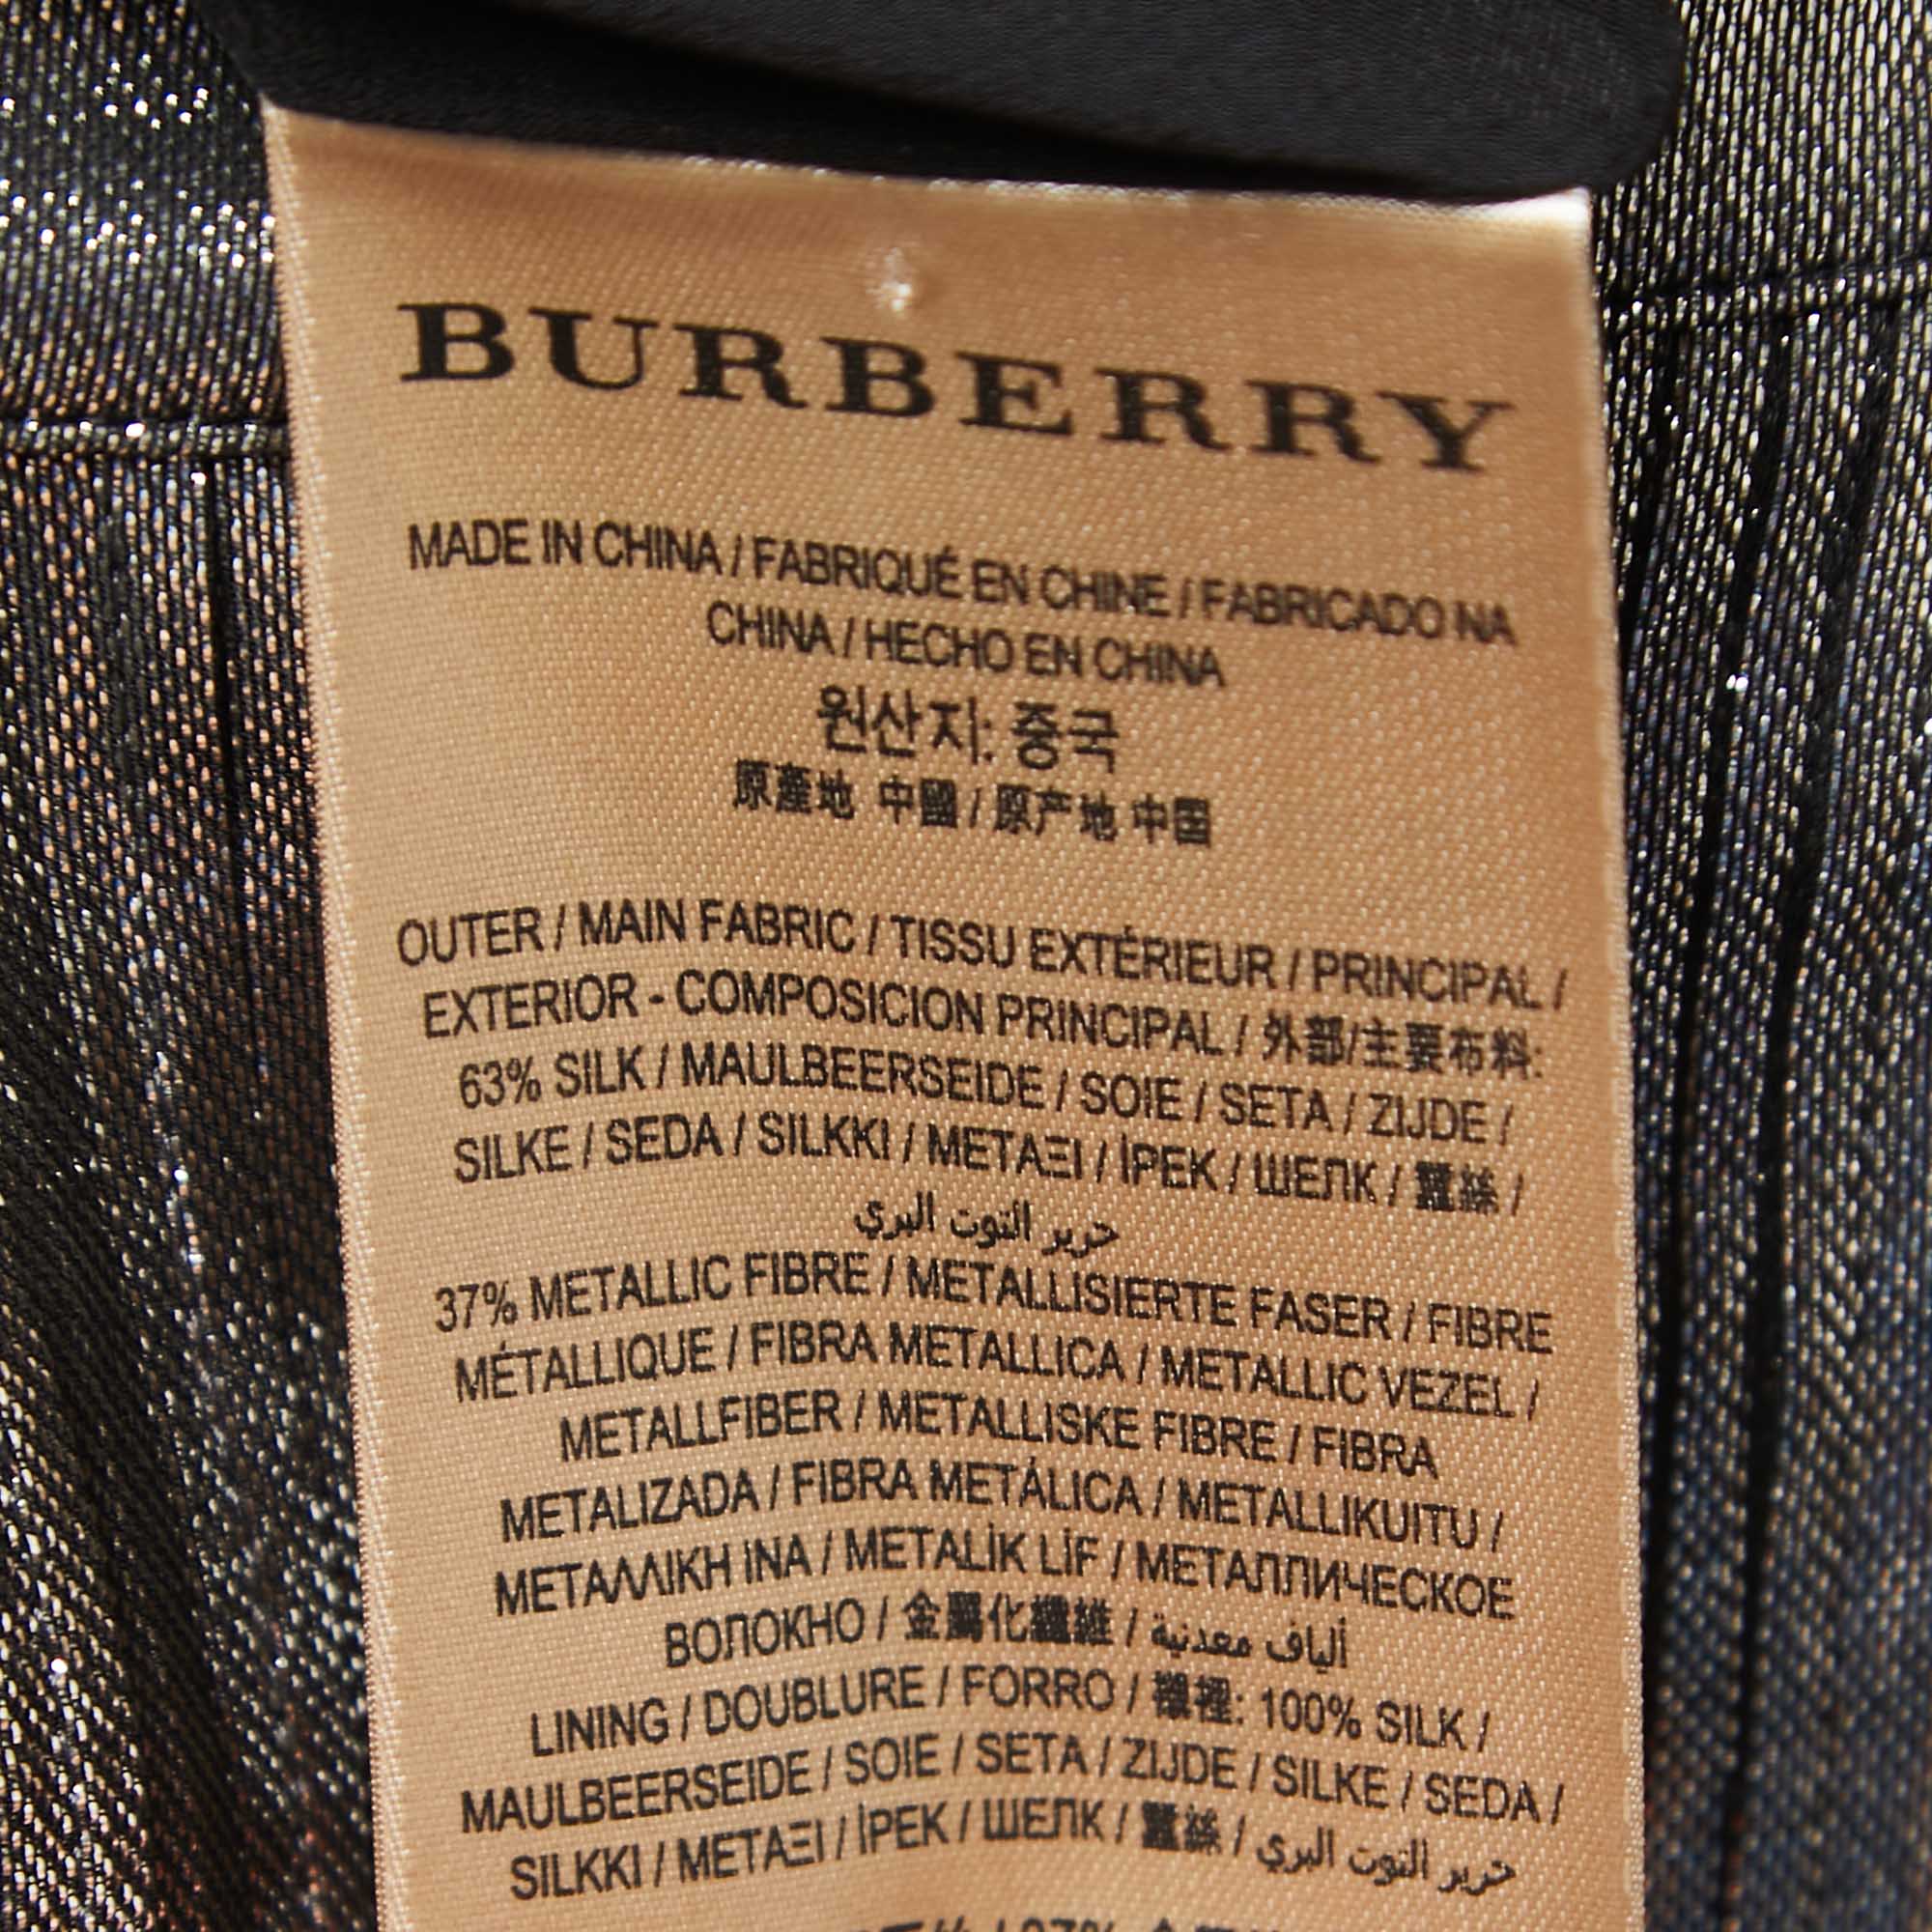 Burberry Metallic Grey Lurex & Silk Button Front Belted Short Dress L